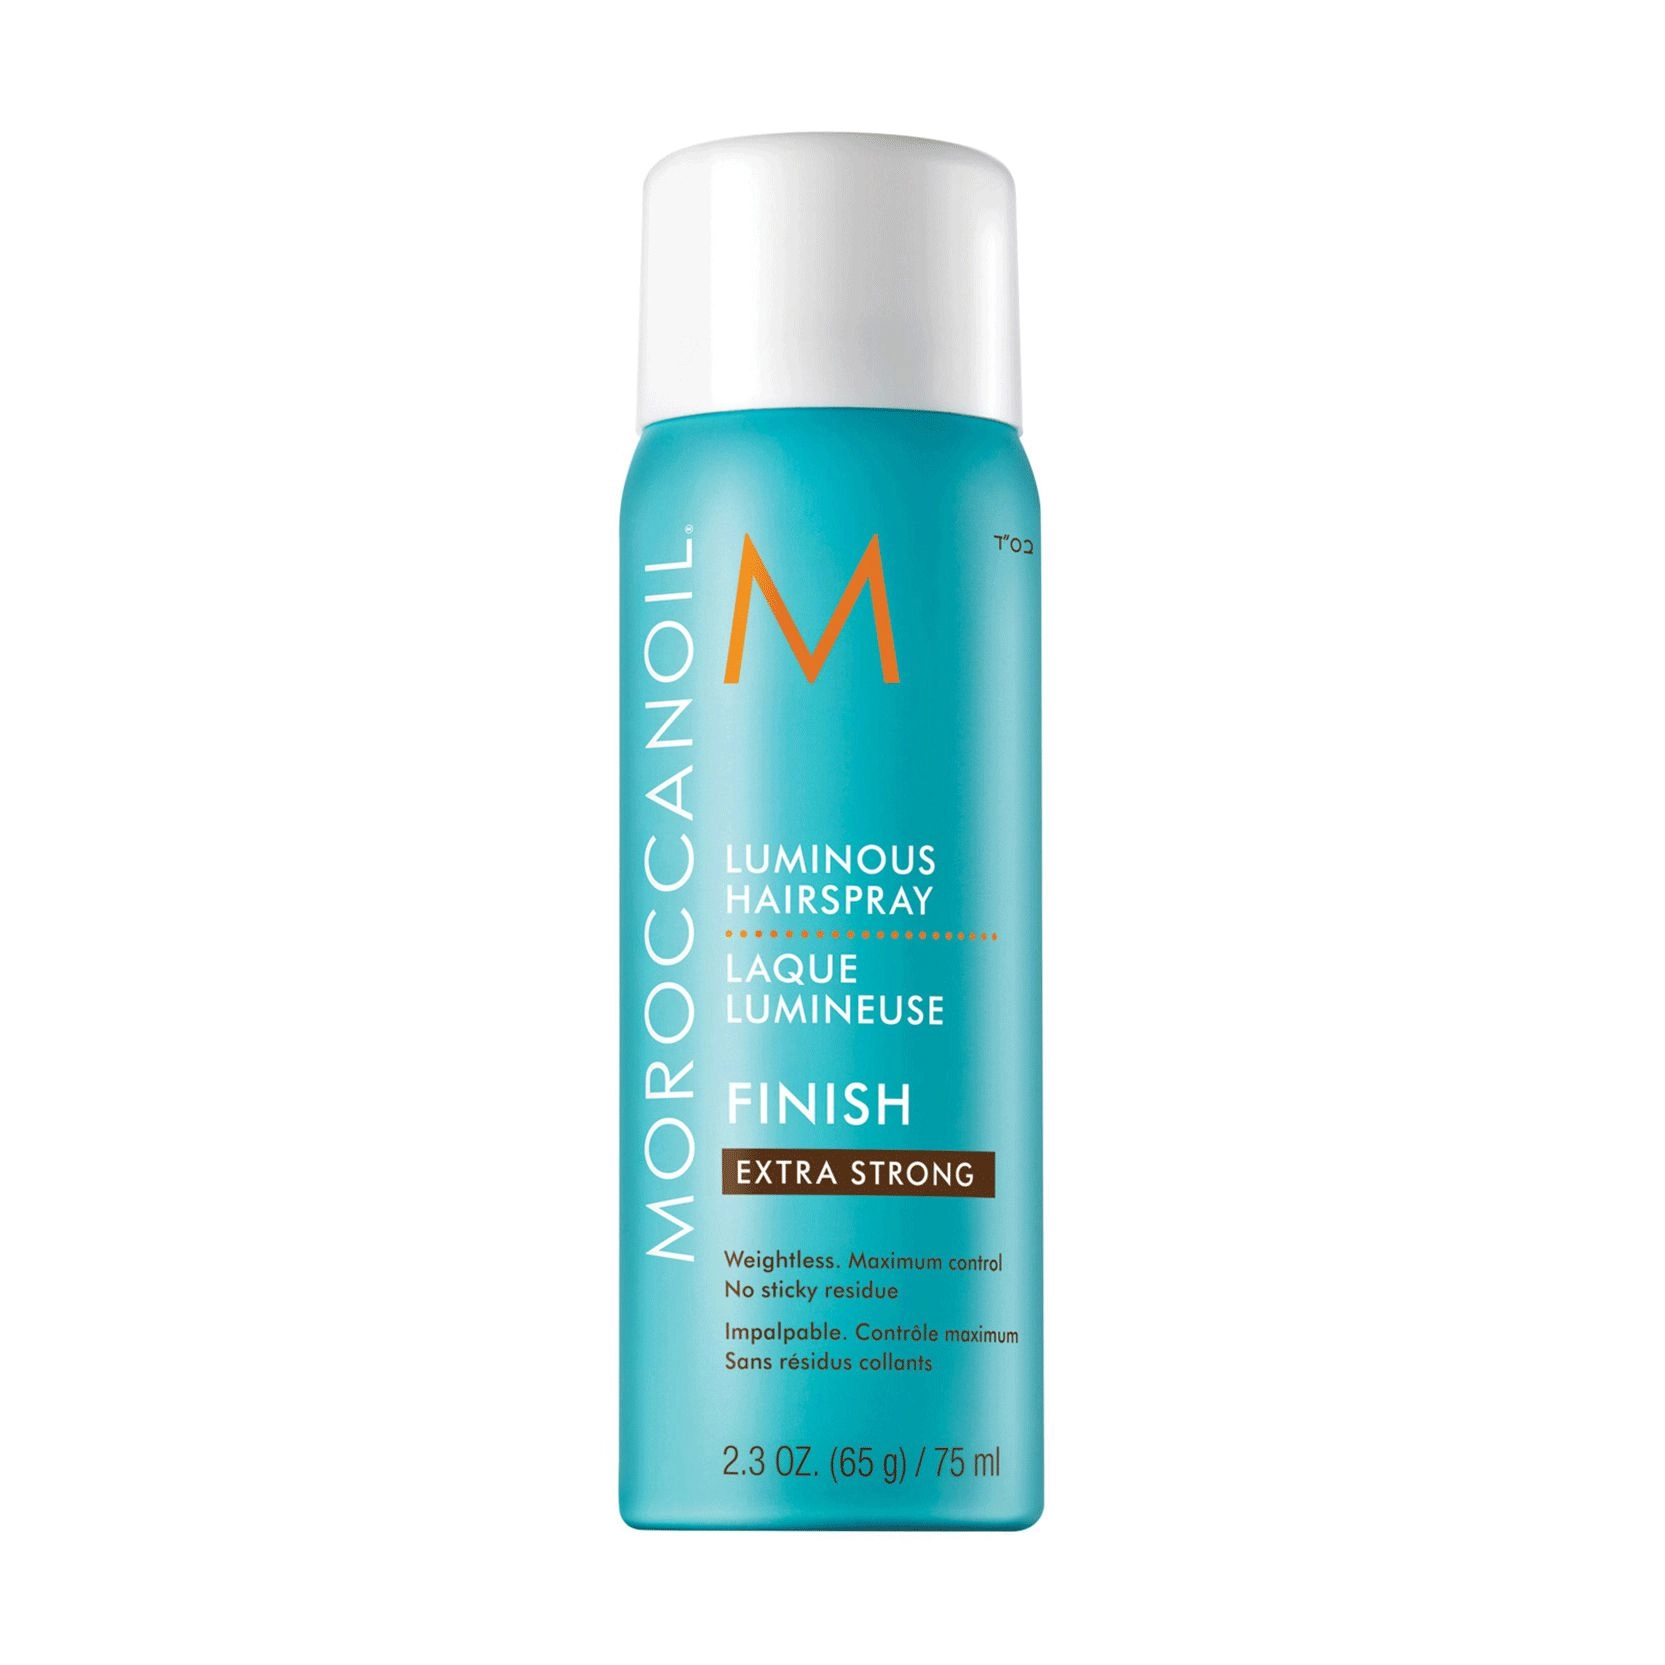 Сияющий лак для волос экстрасильной фиксации - Moroccanoil Finish Luminous Hairspray Extra Strong, 75 мл - фото N1